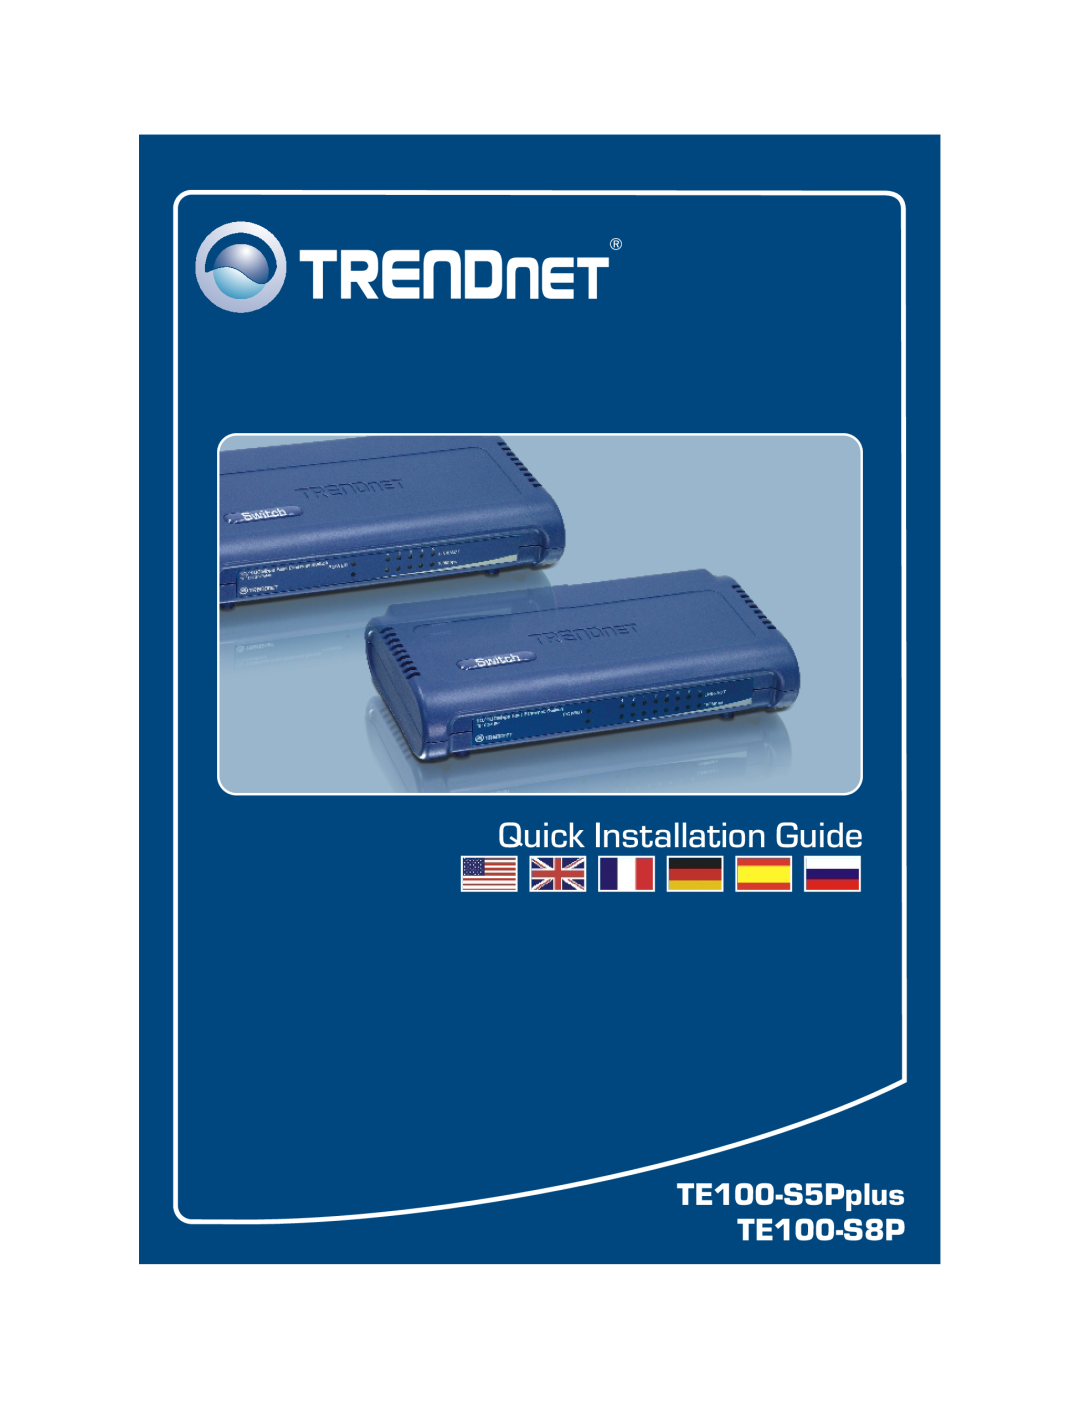 TRENDnet manual TE100-S5Pplus TE100-S8P, Quick Installation Guide 